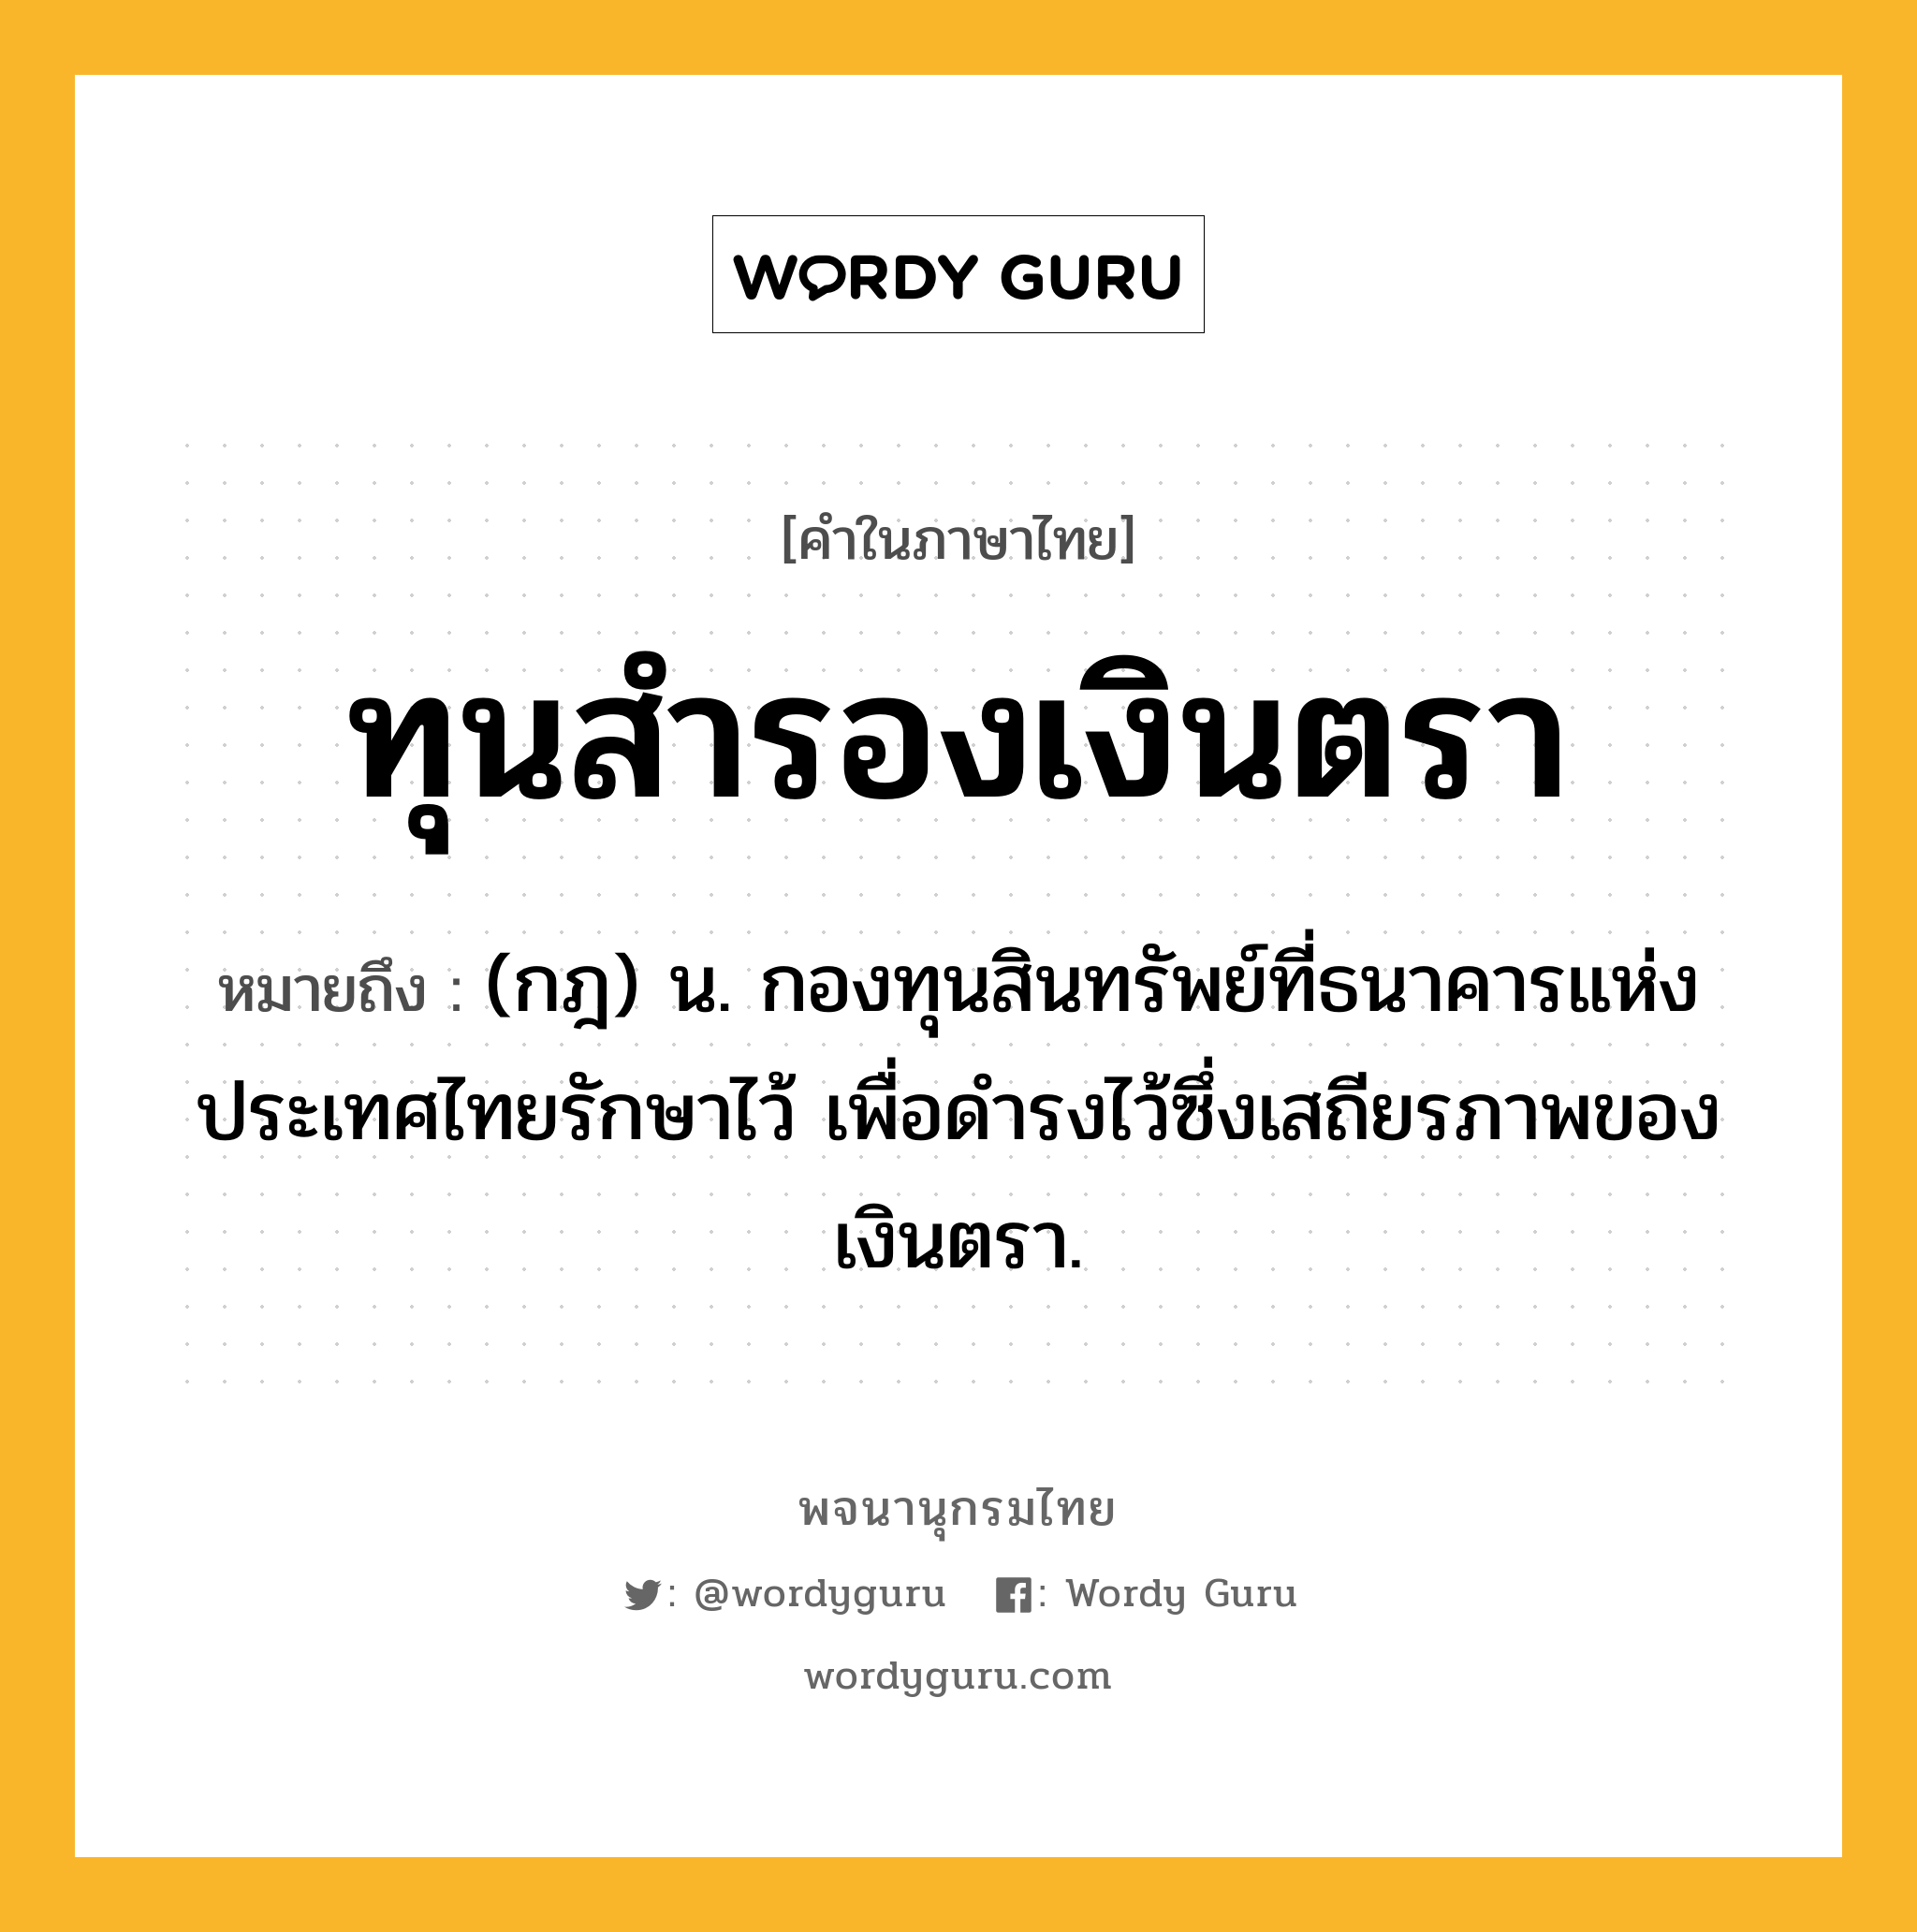 ทุนสำรองเงินตรา หมายถึงอะไร?, คำในภาษาไทย ทุนสำรองเงินตรา หมายถึง (กฎ) น. กองทุนสินทรัพย์ที่ธนาคารแห่งประเทศไทยรักษาไว้ เพื่อดํารงไว้ซึ่งเสถียรภาพของเงินตรา.